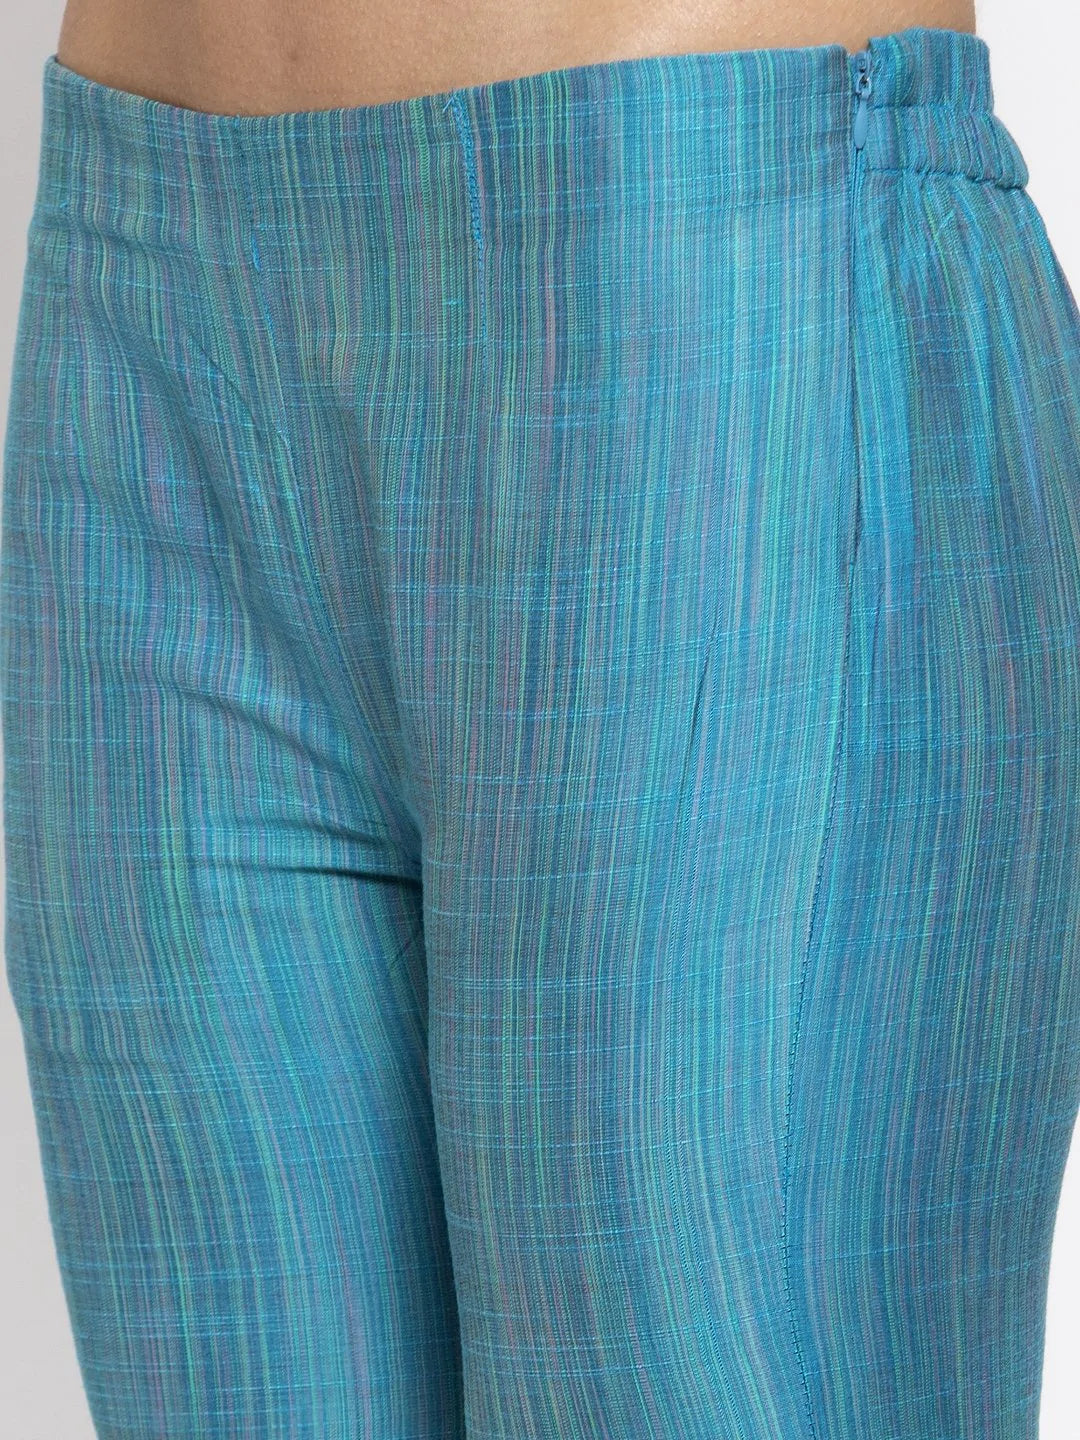 Jompers Women Blue & Green Self-Striped Kurta with Trousers ( JOKS 1310 Blue )